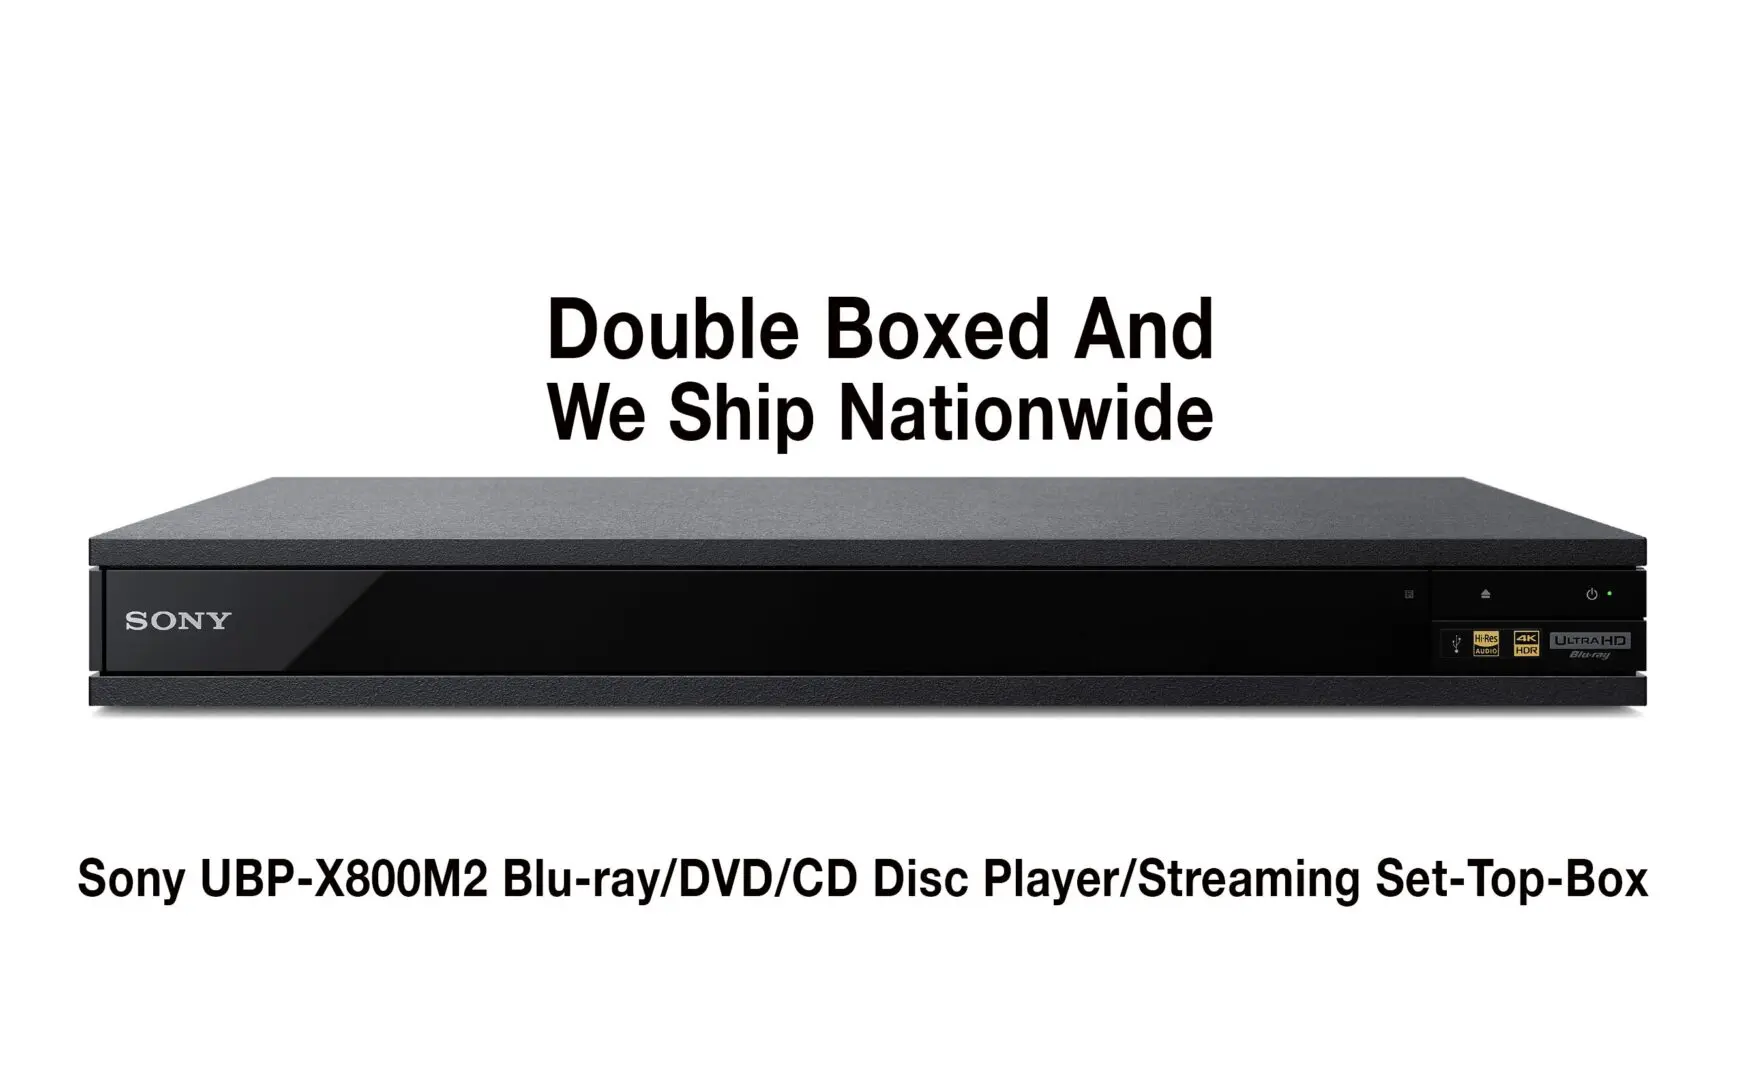 Sony Blu-ray Player UBP-X800M2 Region Free Full MultiRegion 4K Ultra HD